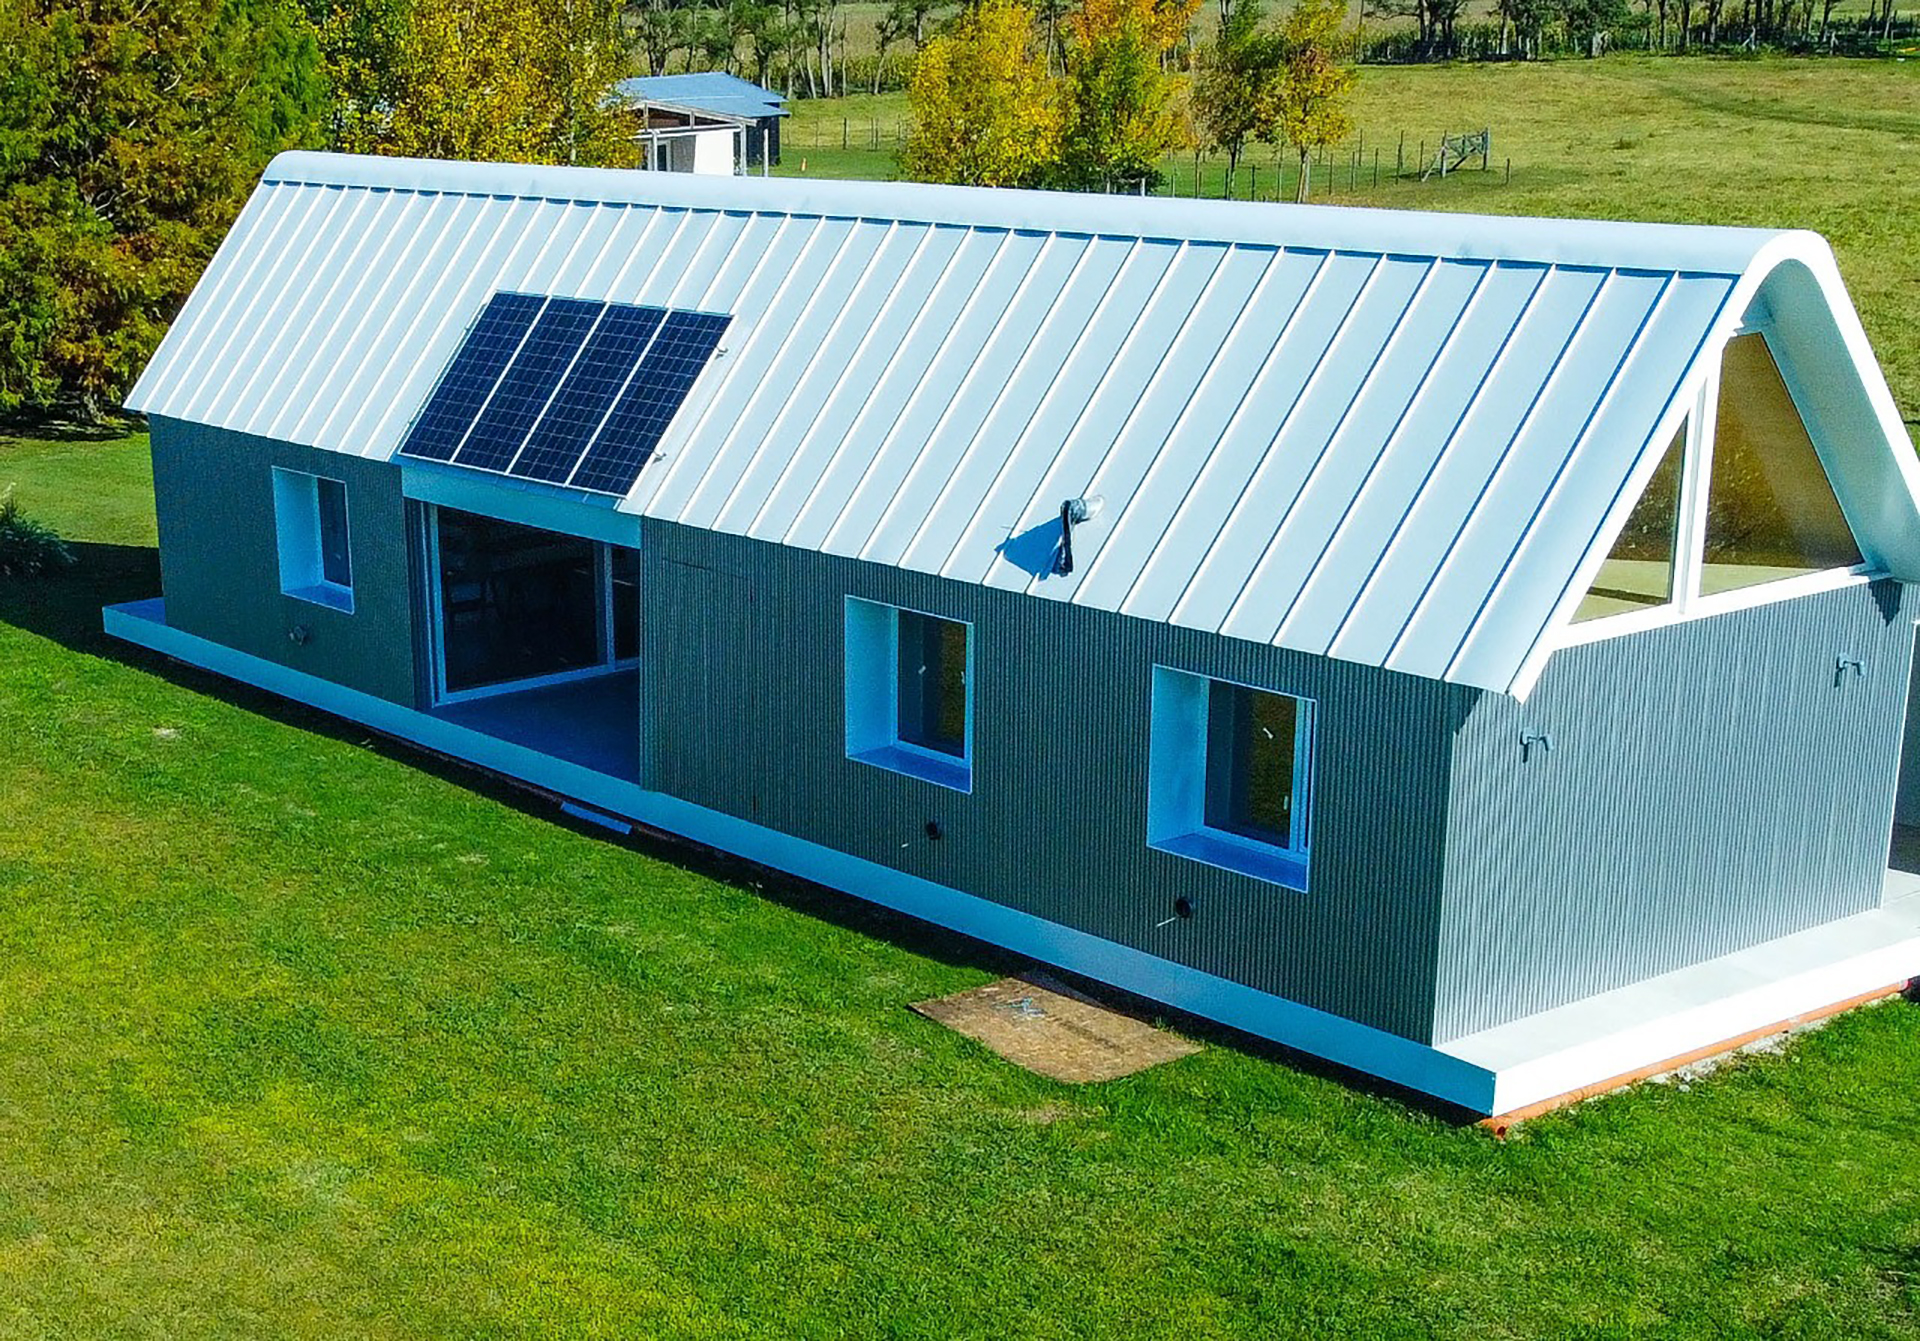 Los paneles solares cada vez son más utilizados en las nuevas edificaciones